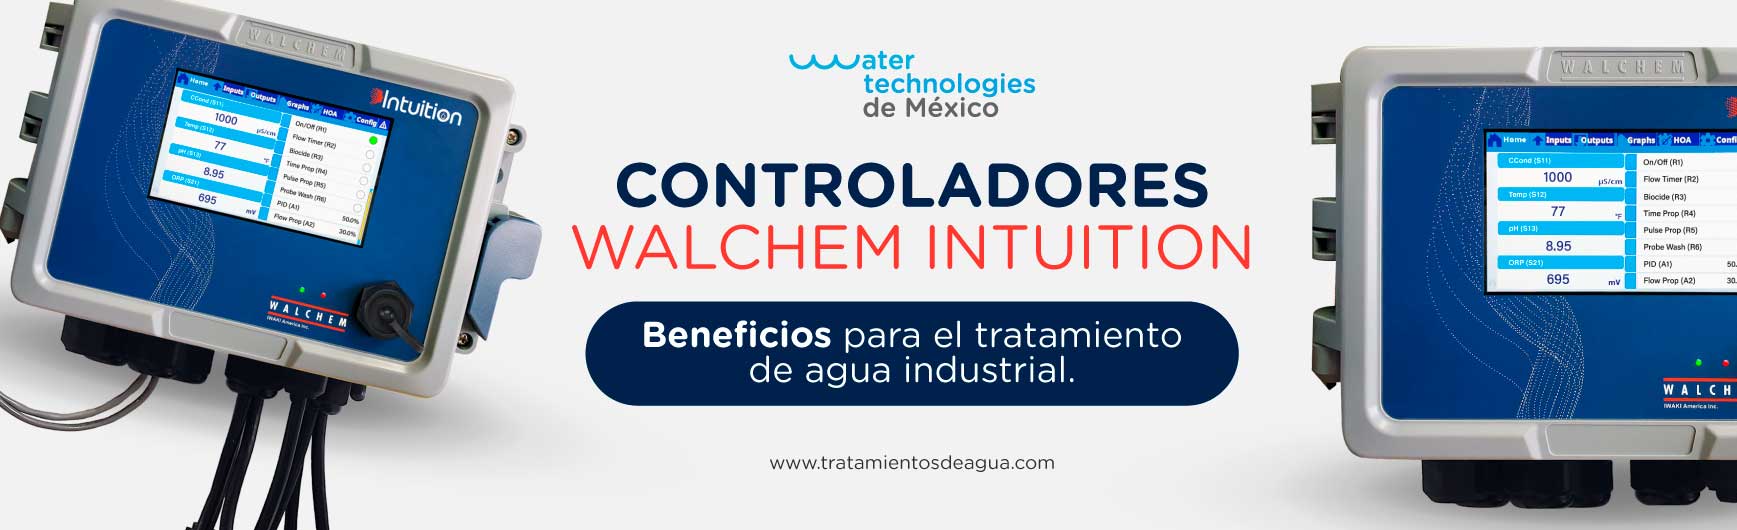 Beneficios de controladores para el tratamiento de agua industrial.